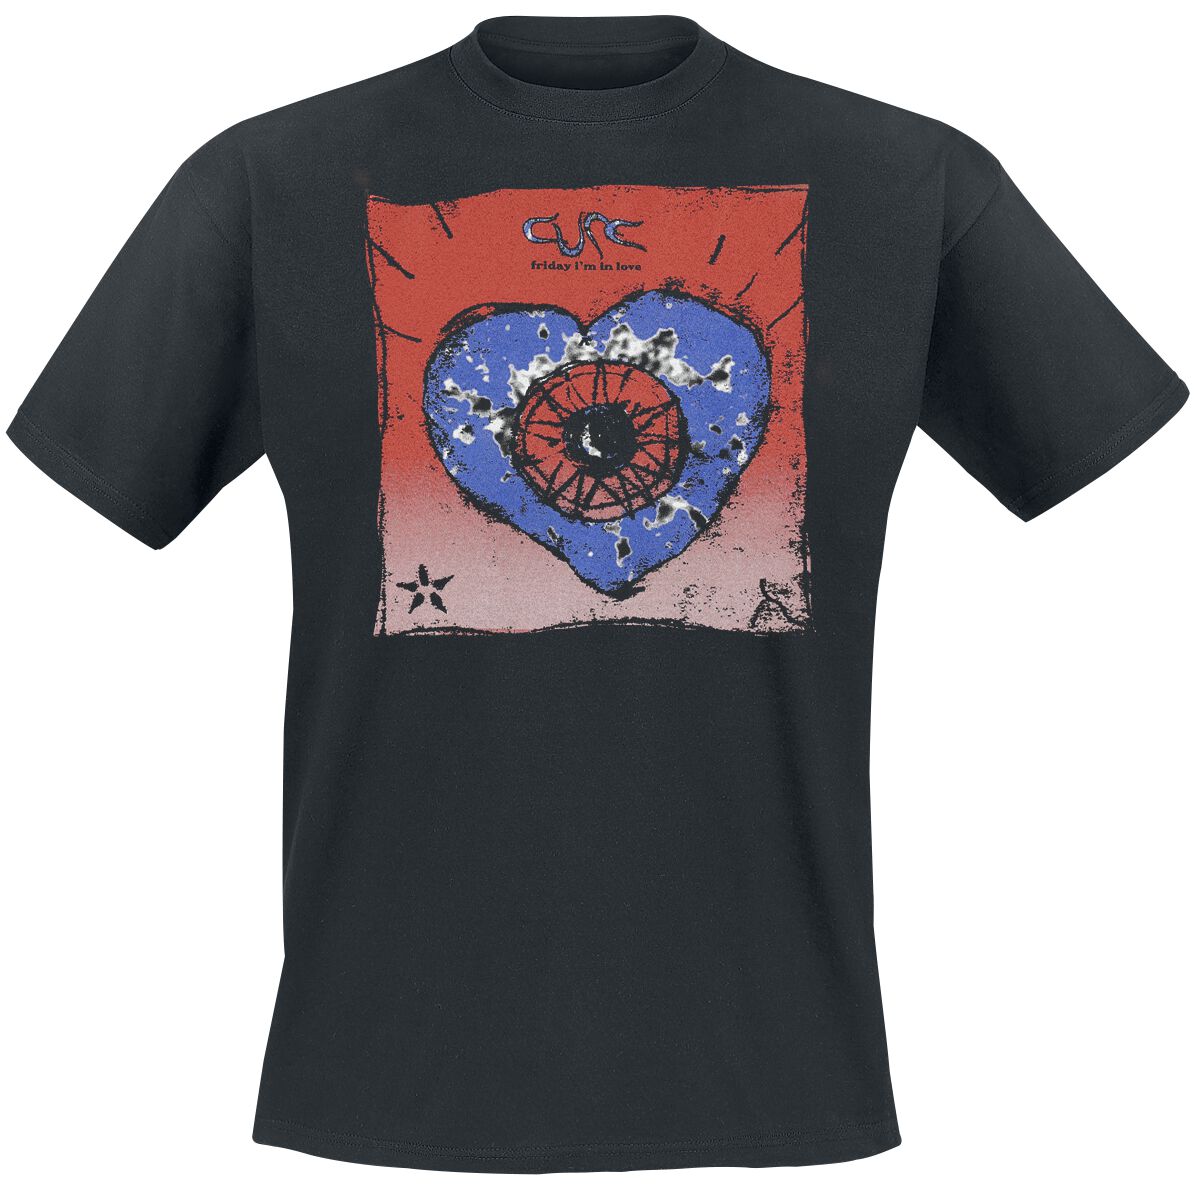 The Cure T-Shirt - Friday I`m In Love - S bis 4XL - für Männer - Größe 4XL - schwarz  - Lizenziertes Merchandise!